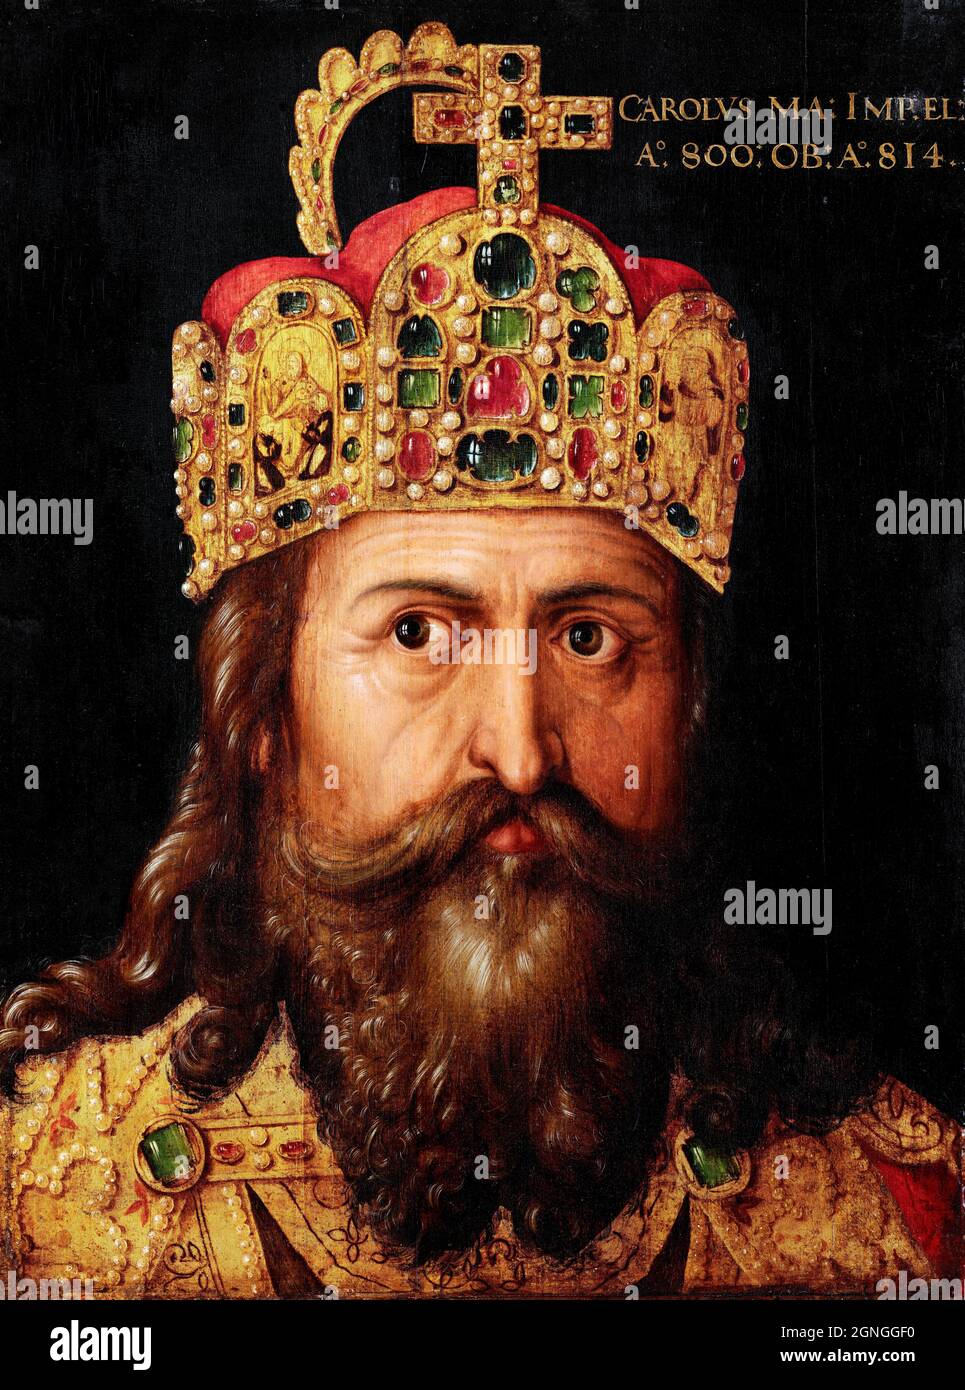 Empereur Charlemagne (748-814) par Albrecht Durer et Workshop, huile sur bois, 1514 Banque D'Images